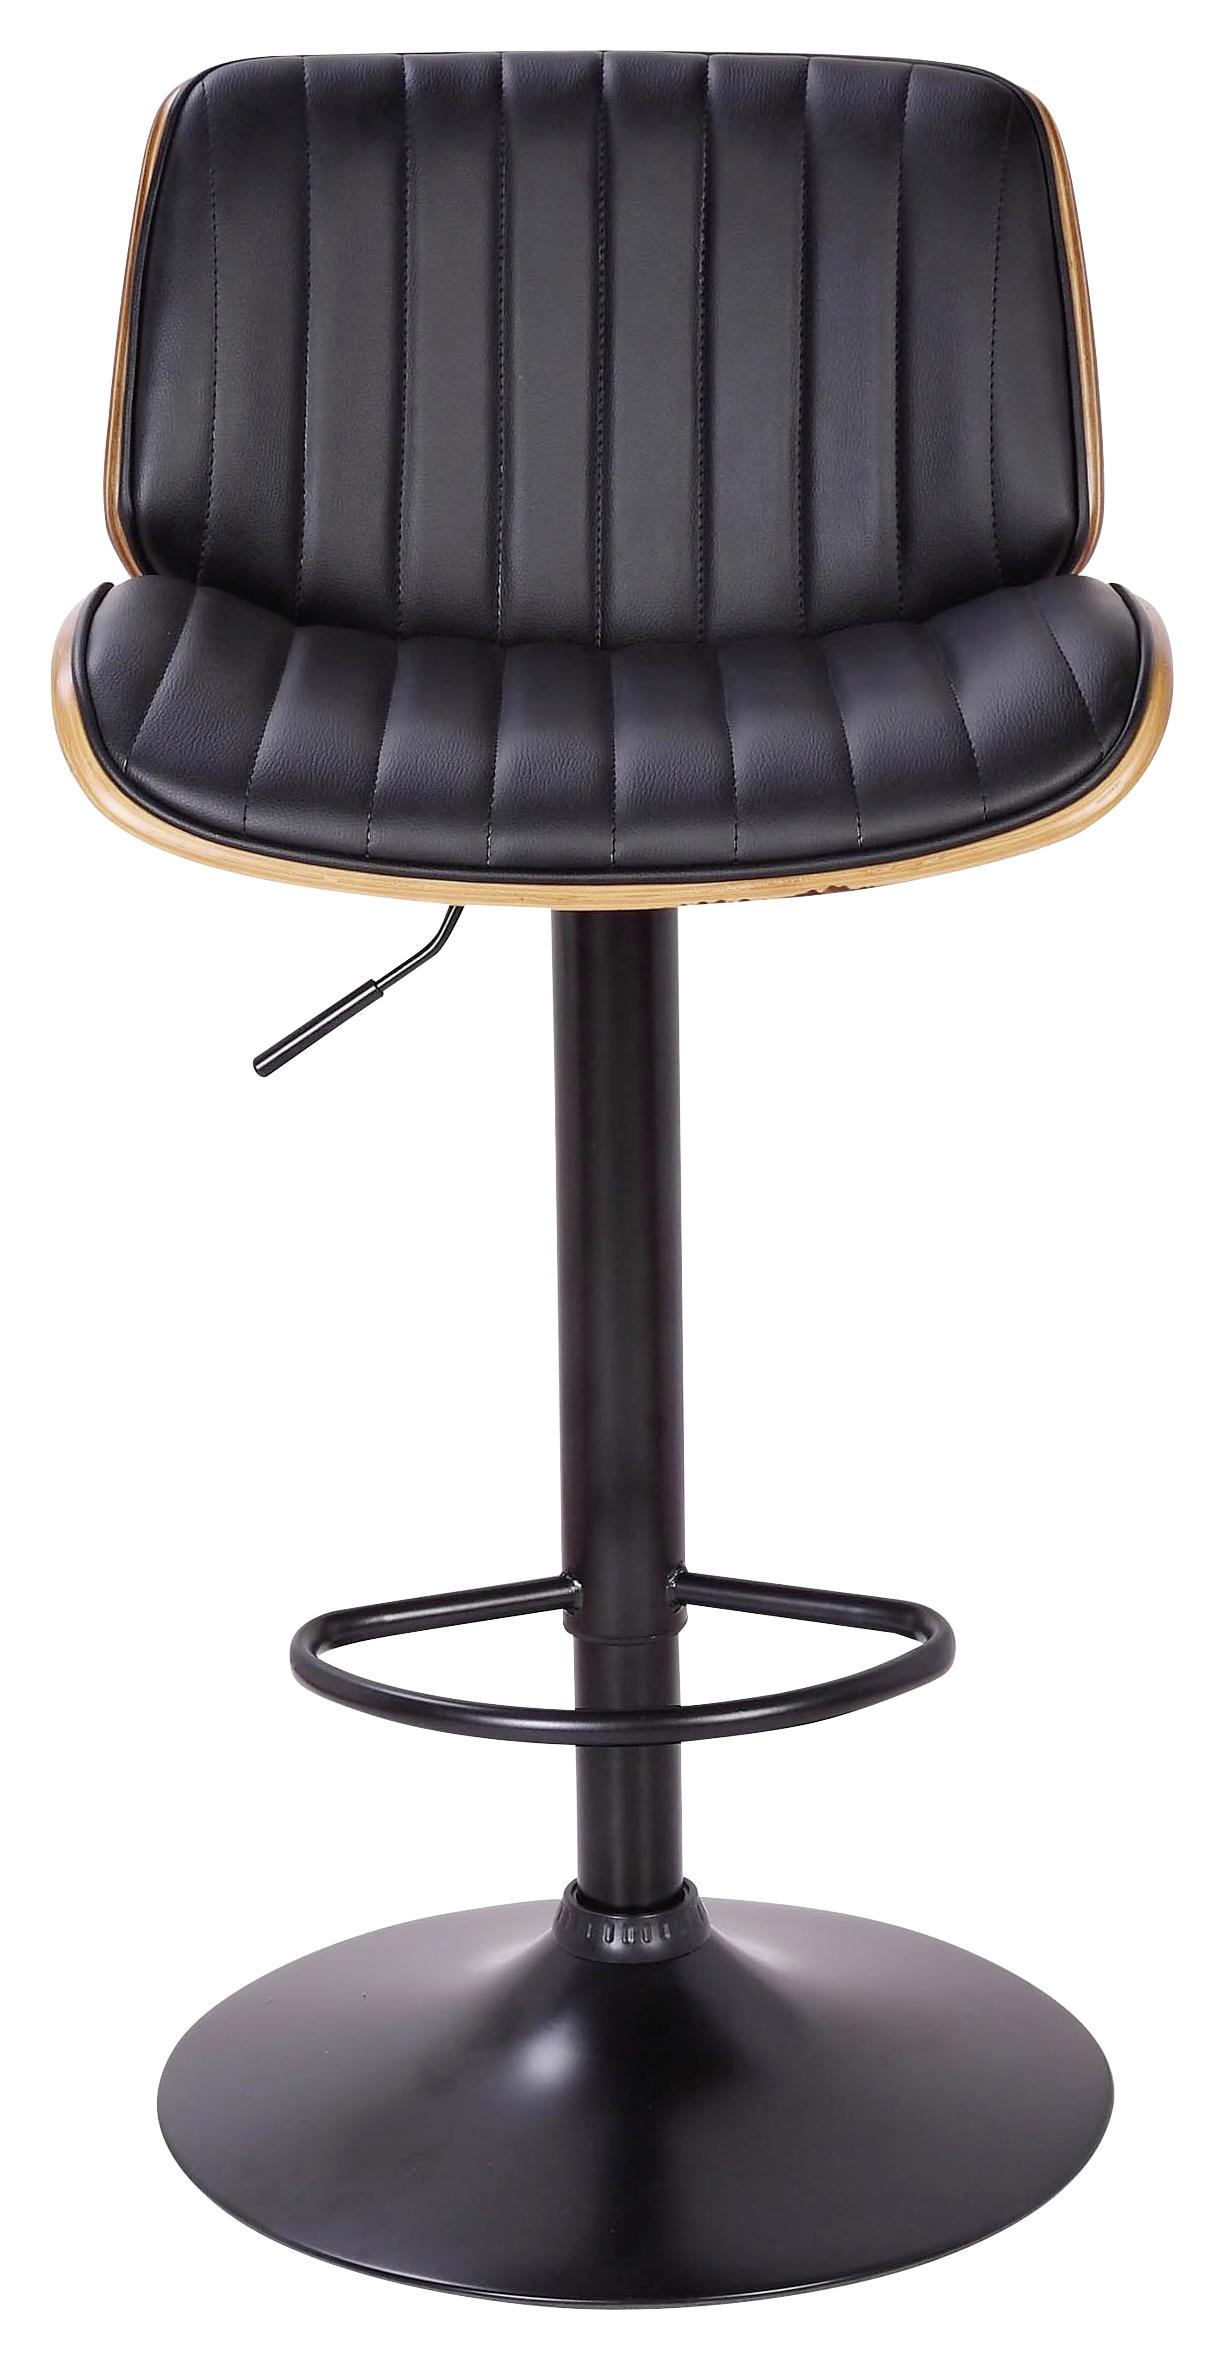 Barska Stolica Jeff - boje oraha/crna, Lifestyle, drvo/metal (47/87-108/50cm) - Premium Living